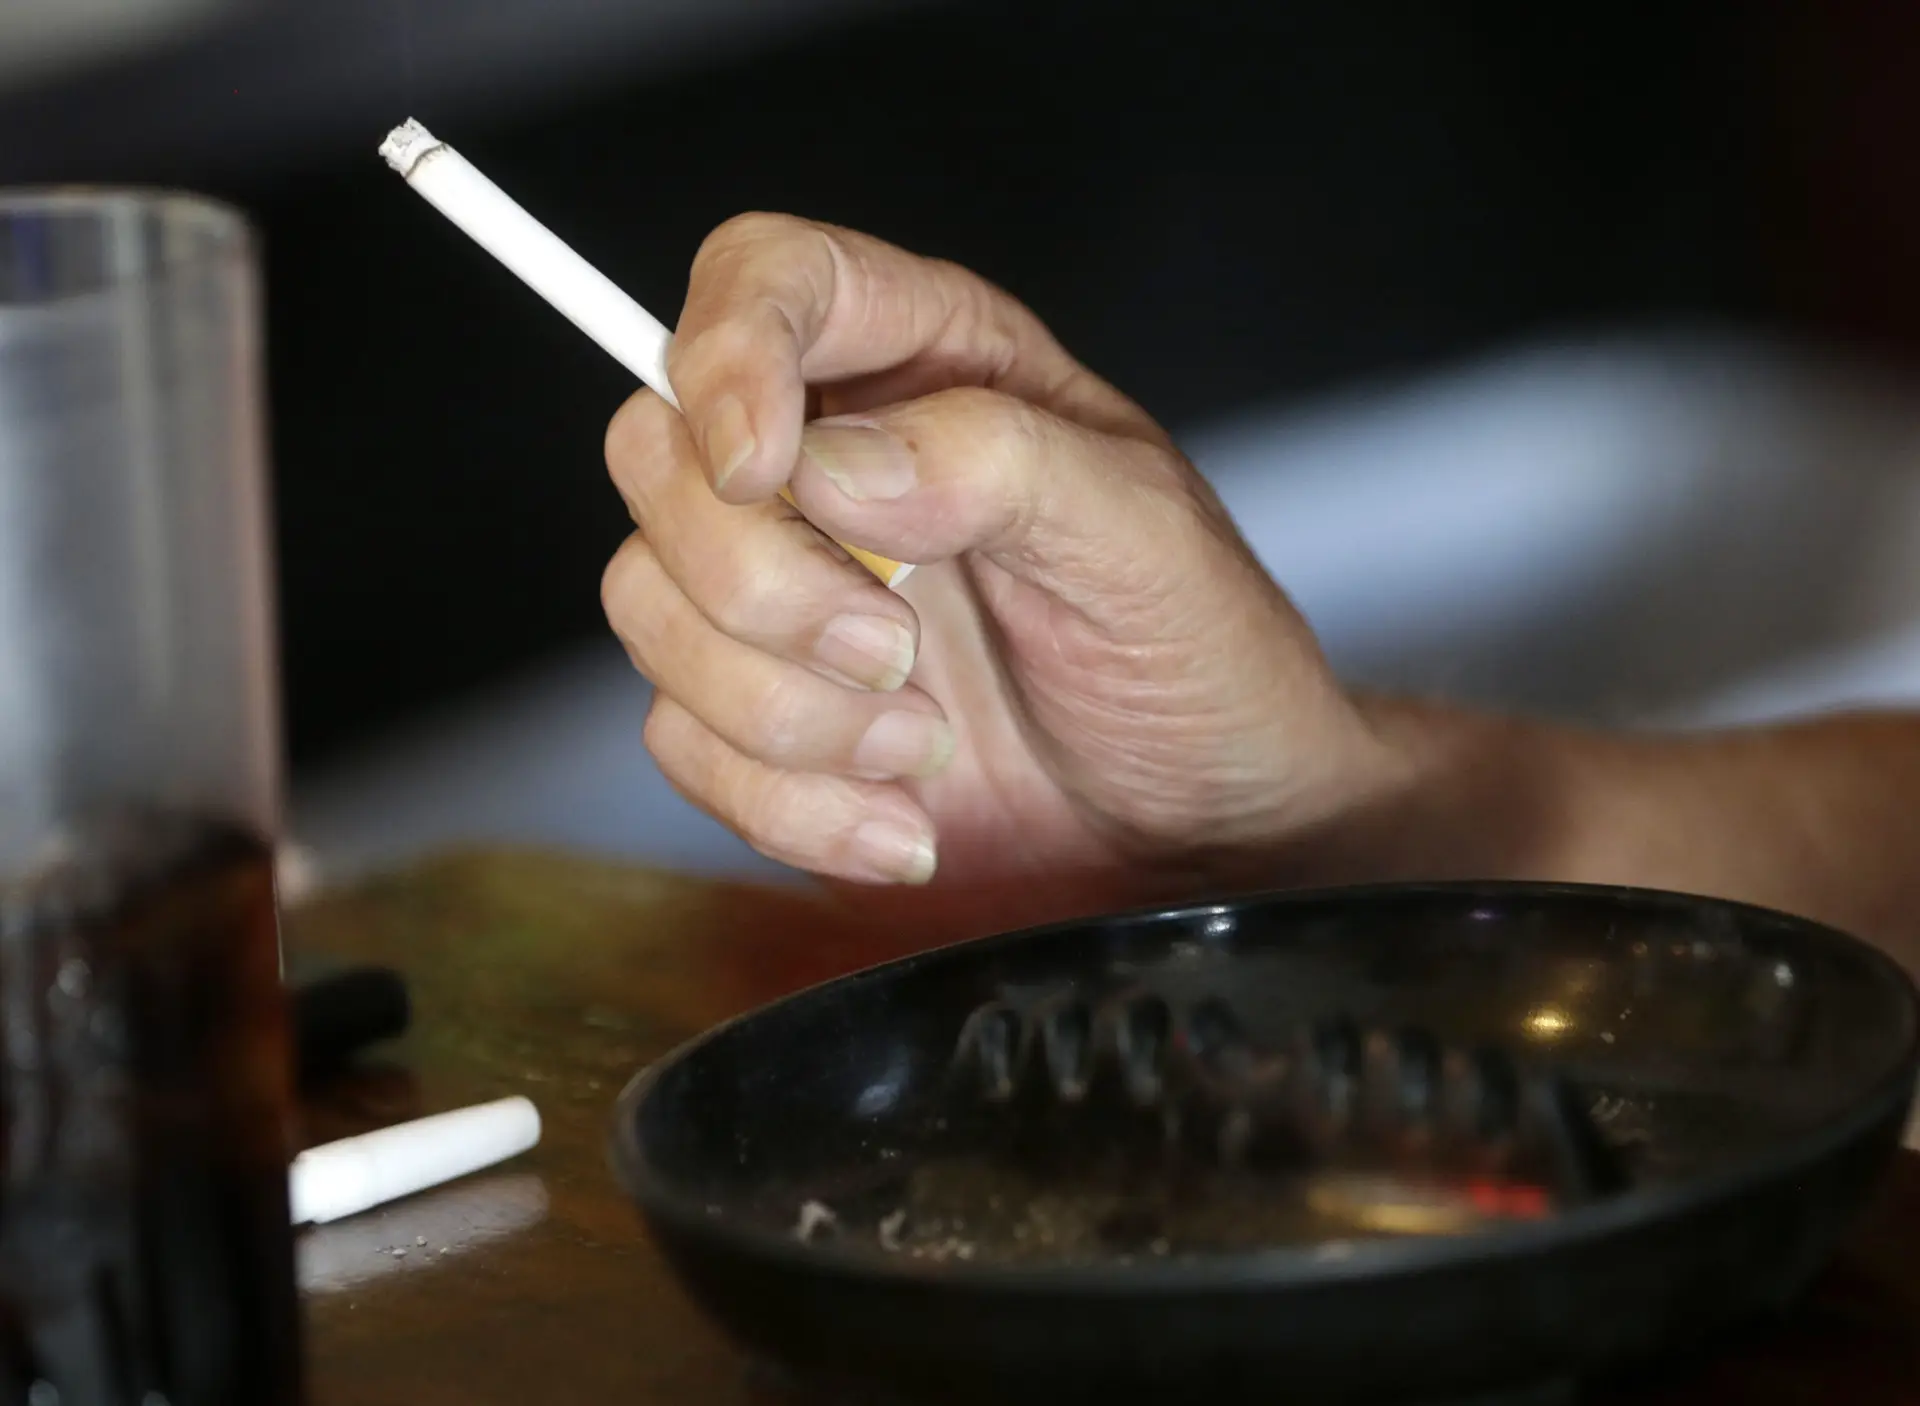 Regras para fumar em restaurantes, bares e discotecas vão mudar em janeiro